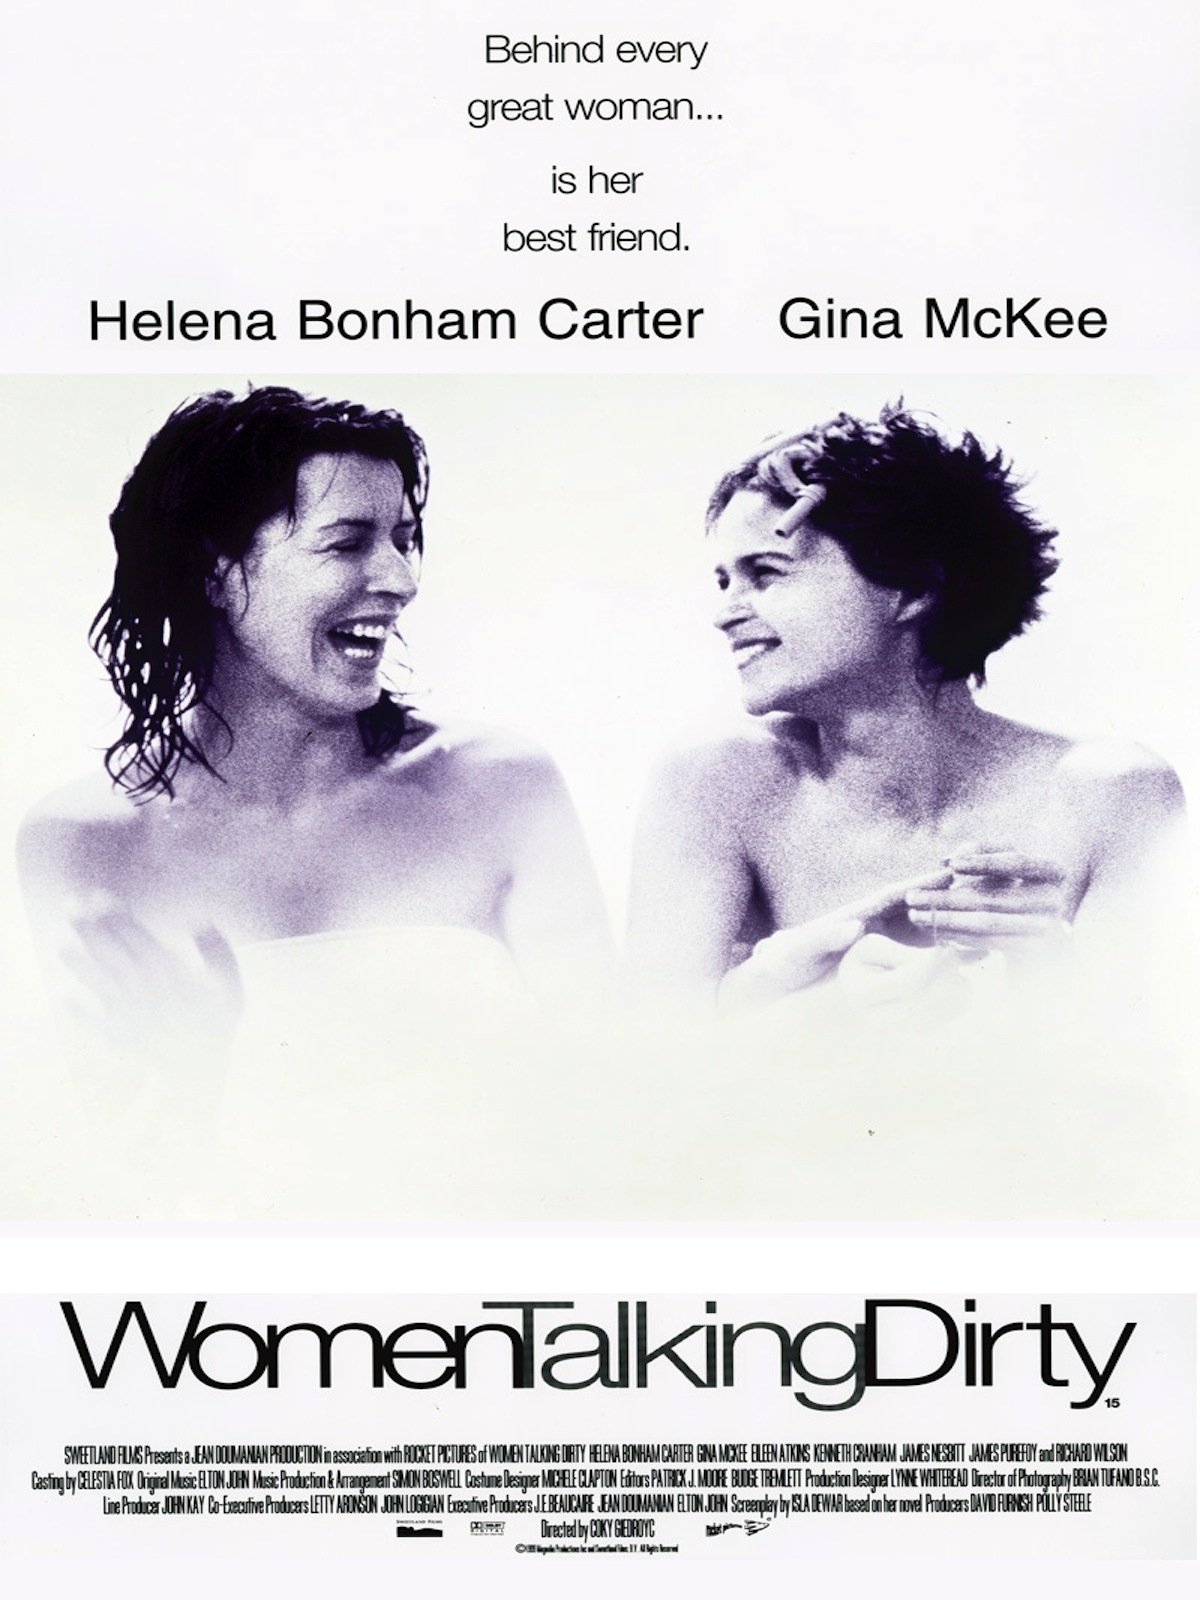 Women Talking Dirty (1999) Screenshot 5